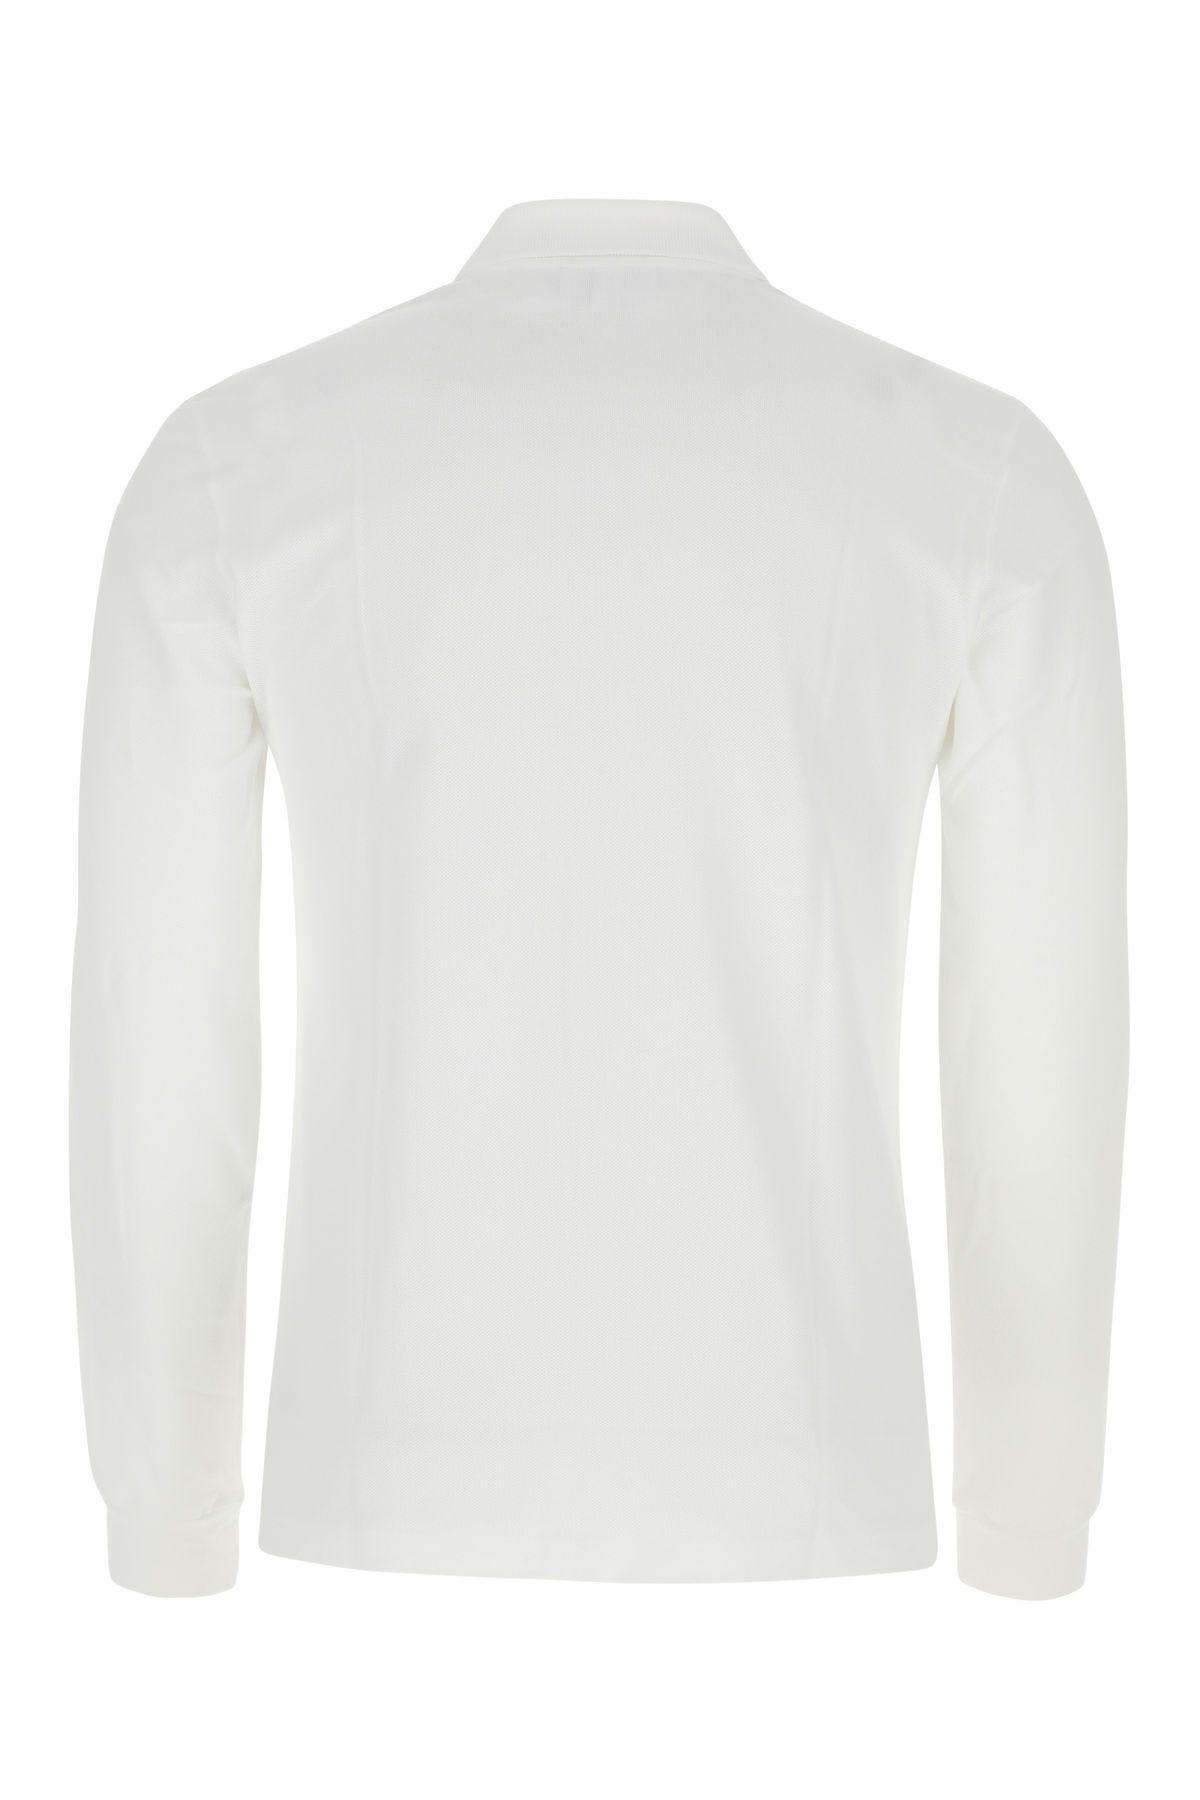 Shop Lacoste White Piquet Polo Shirt